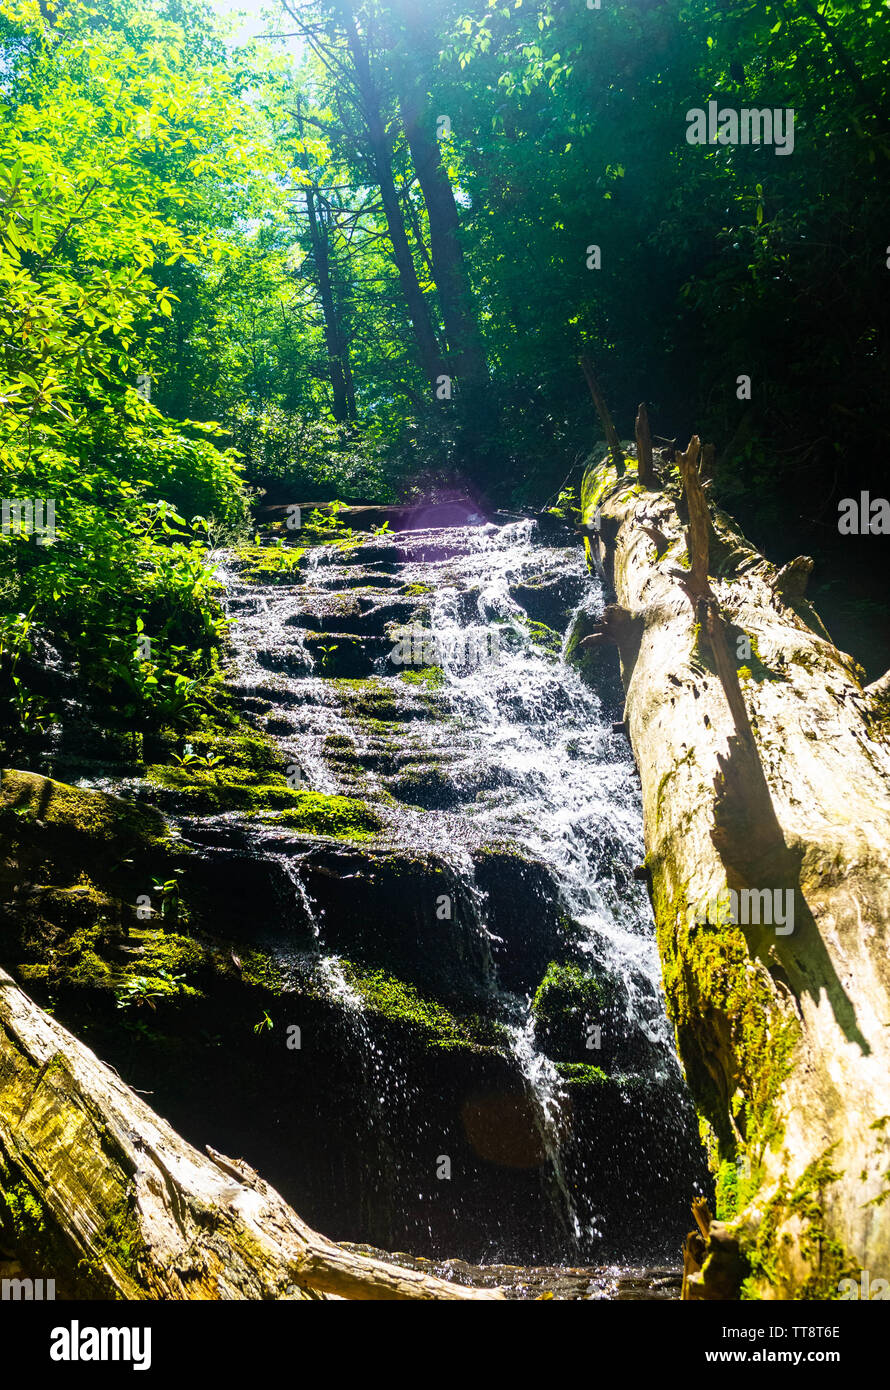 Eine lebendige Wasserfall in den tiefen Wald glitzert im Sonnenlicht. Stockfoto